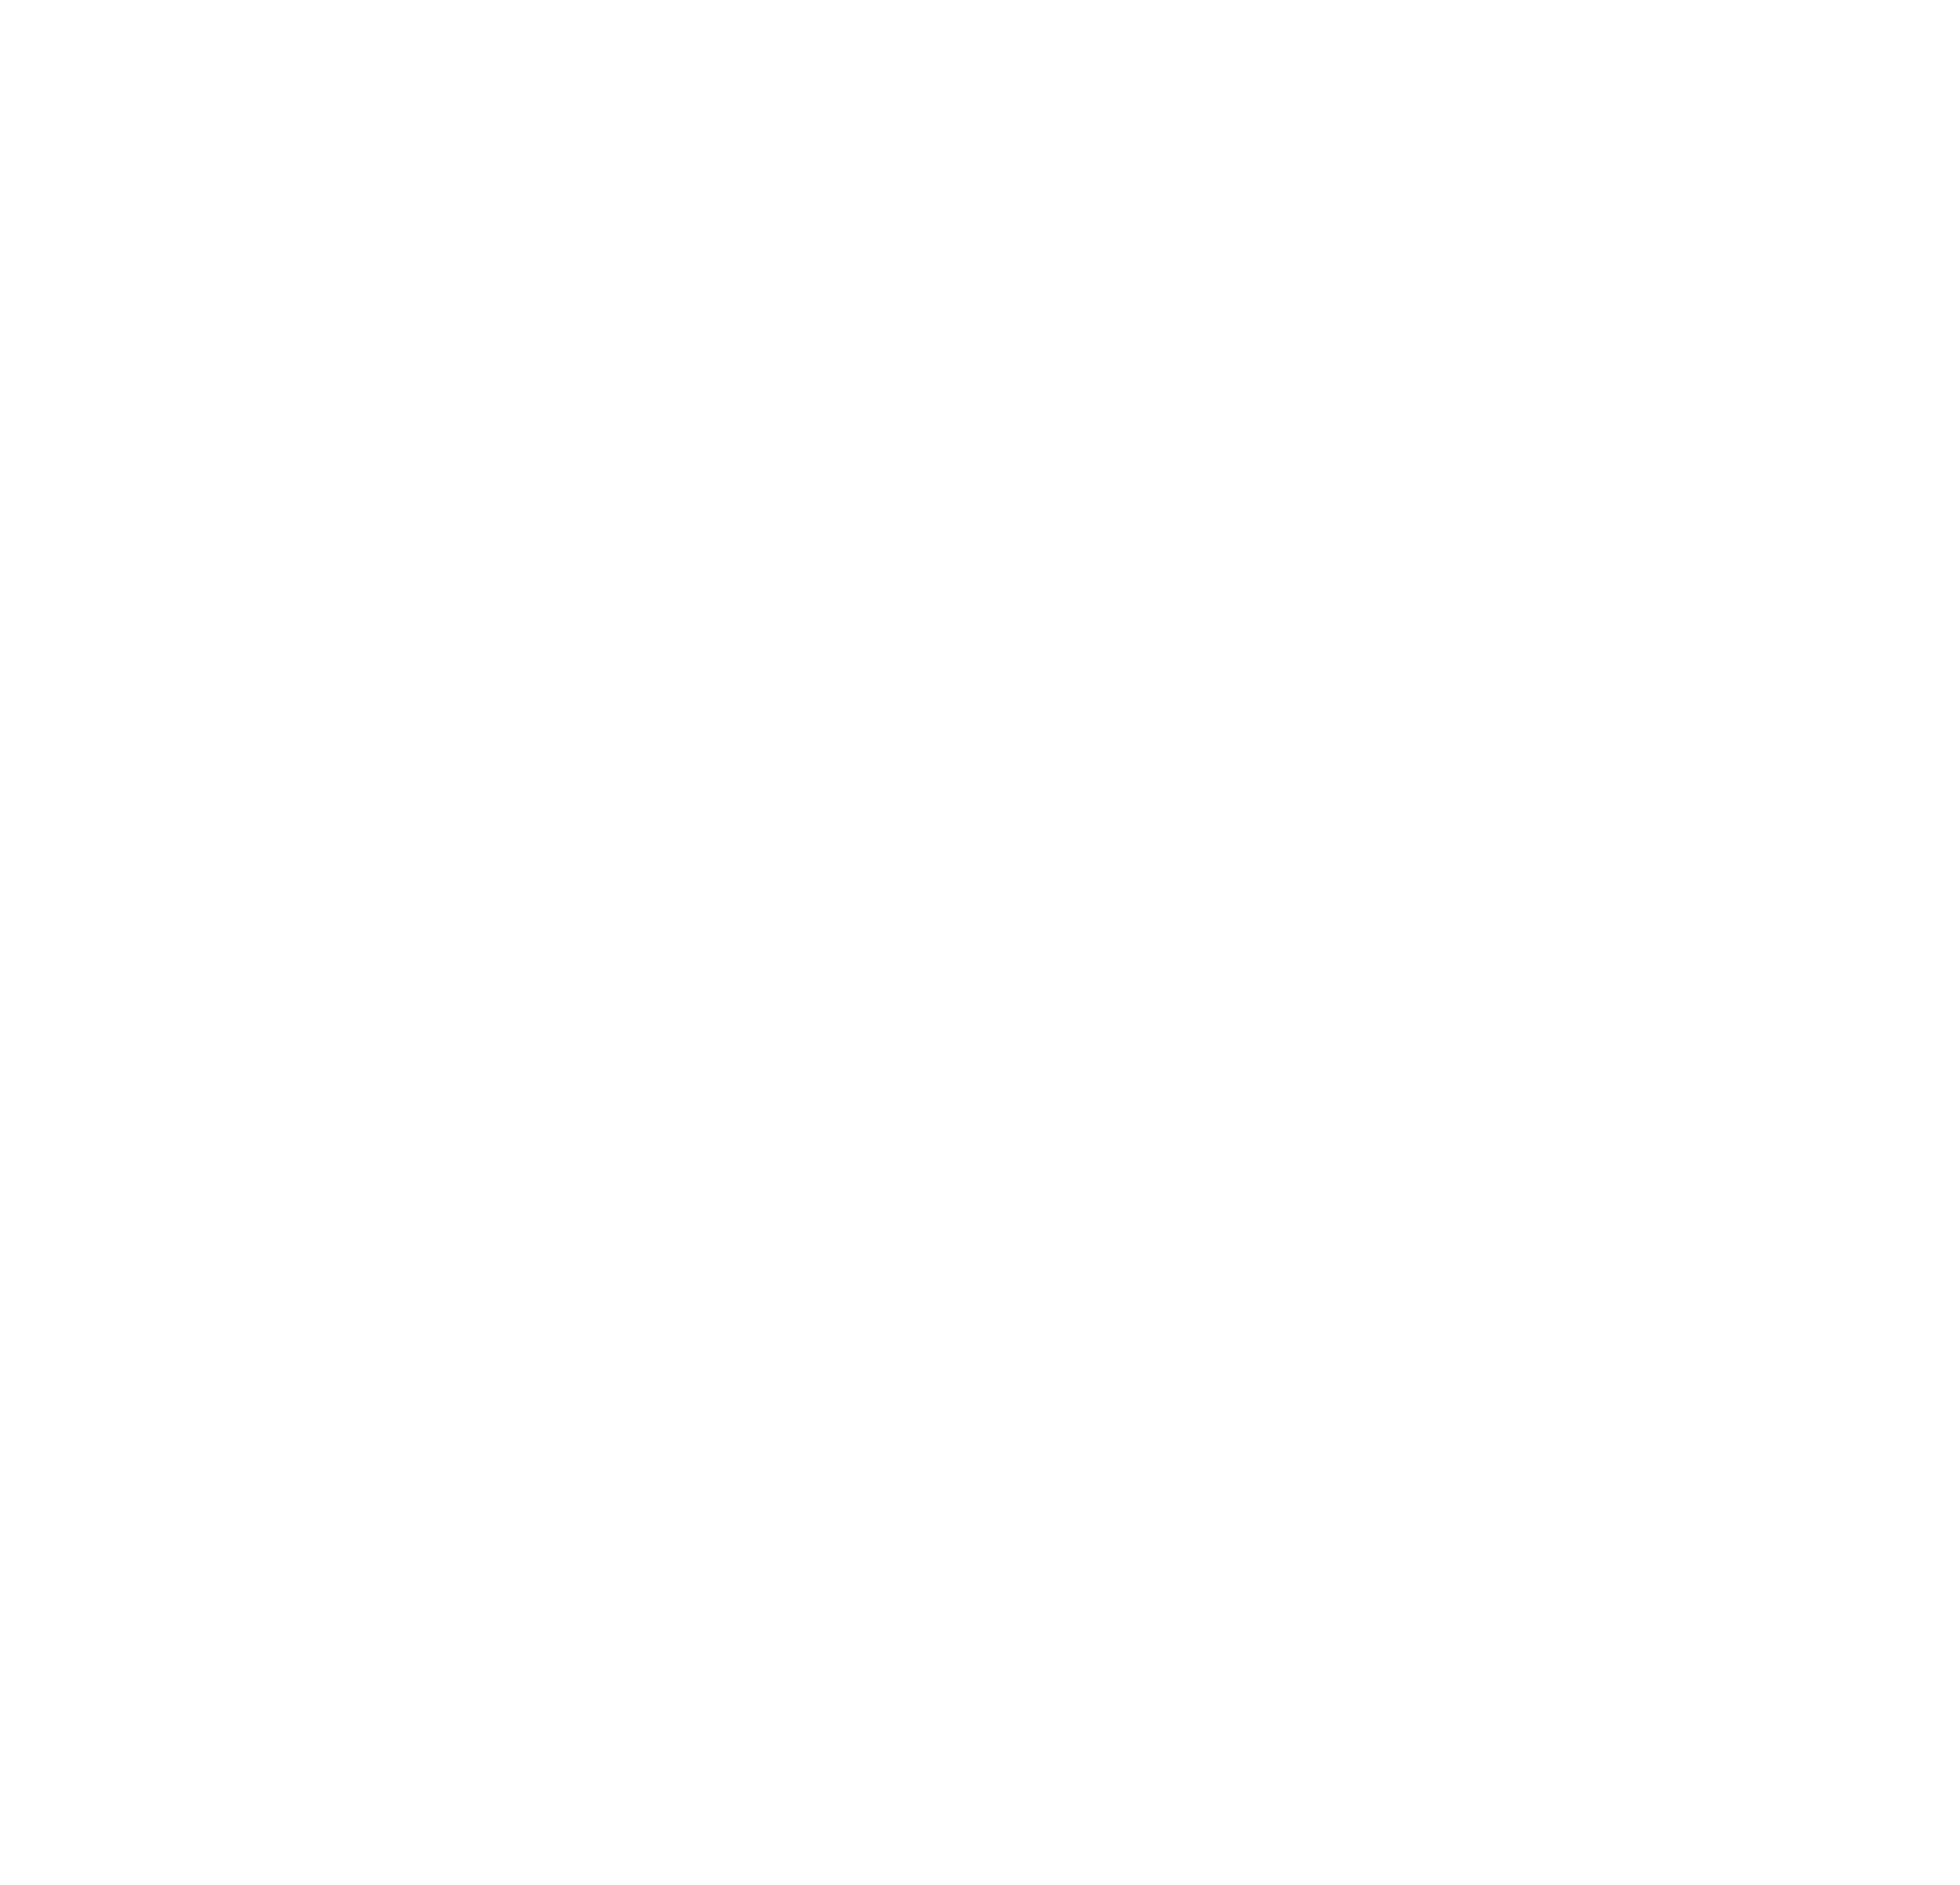 Logga Samarbete för minskat matsvinn